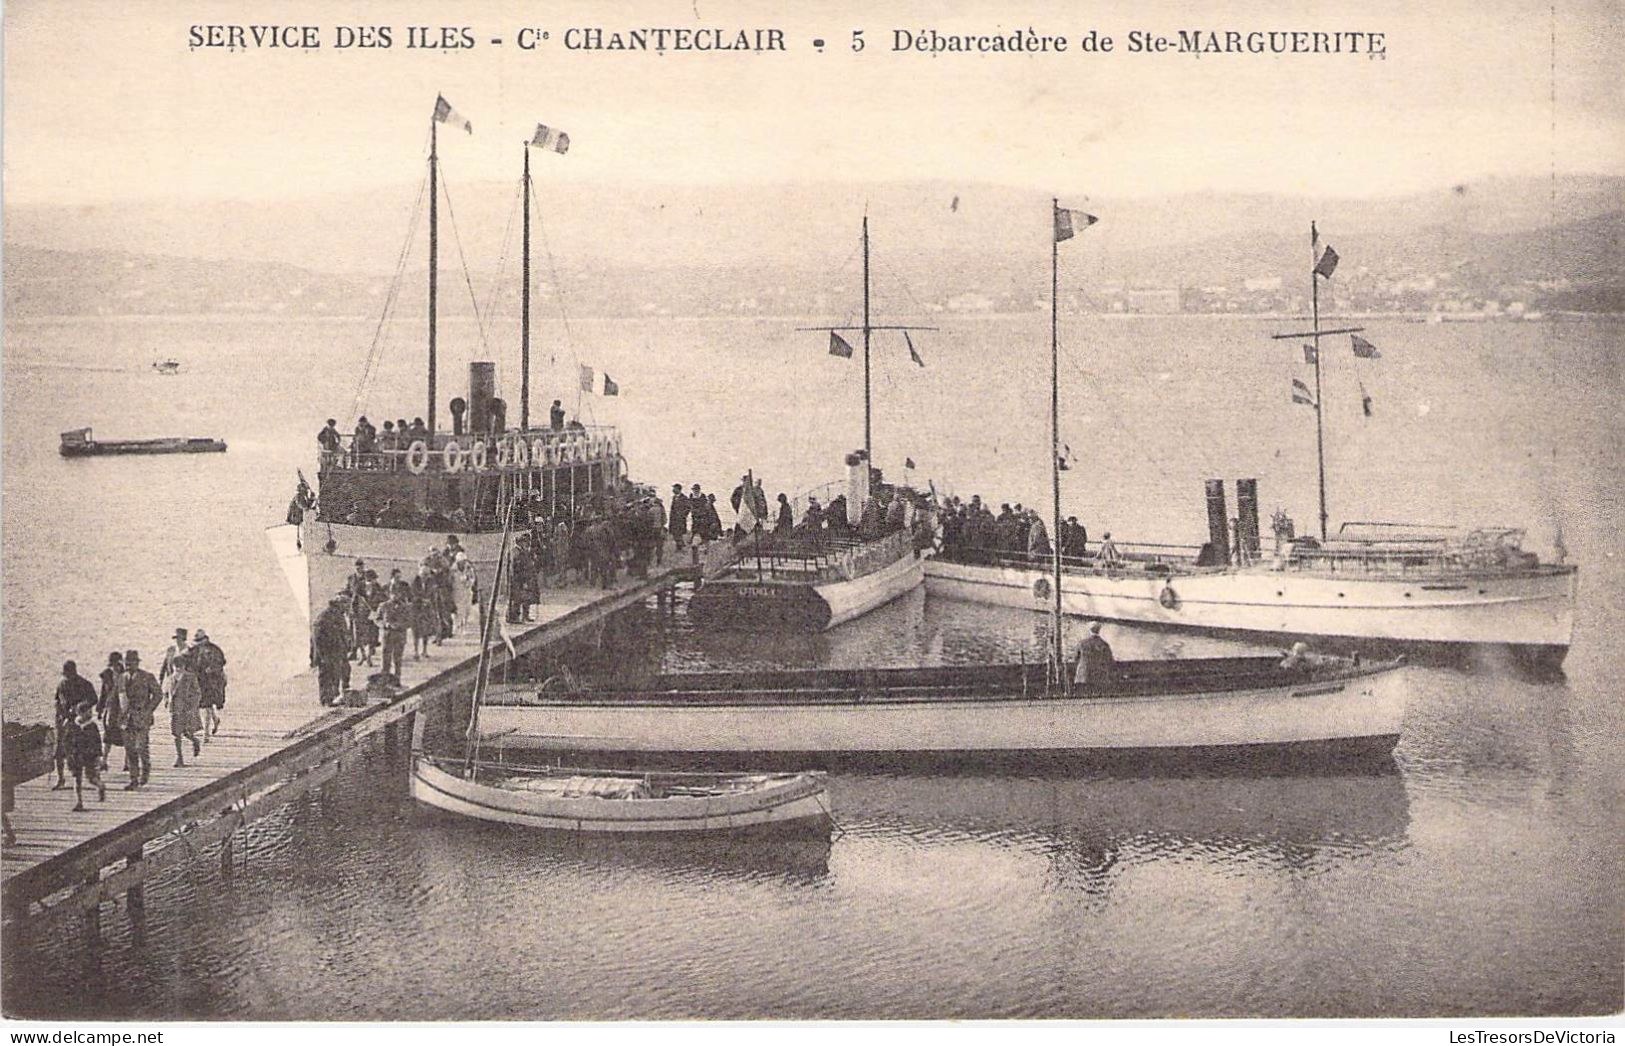 TRANSPORTS -  AEROGLISSEURS - Service Des Iles - Cie Chanteclair - Débarcadère Ste Marguerite - Carte Postale Ancienne - Luftkissenfahrzeuge